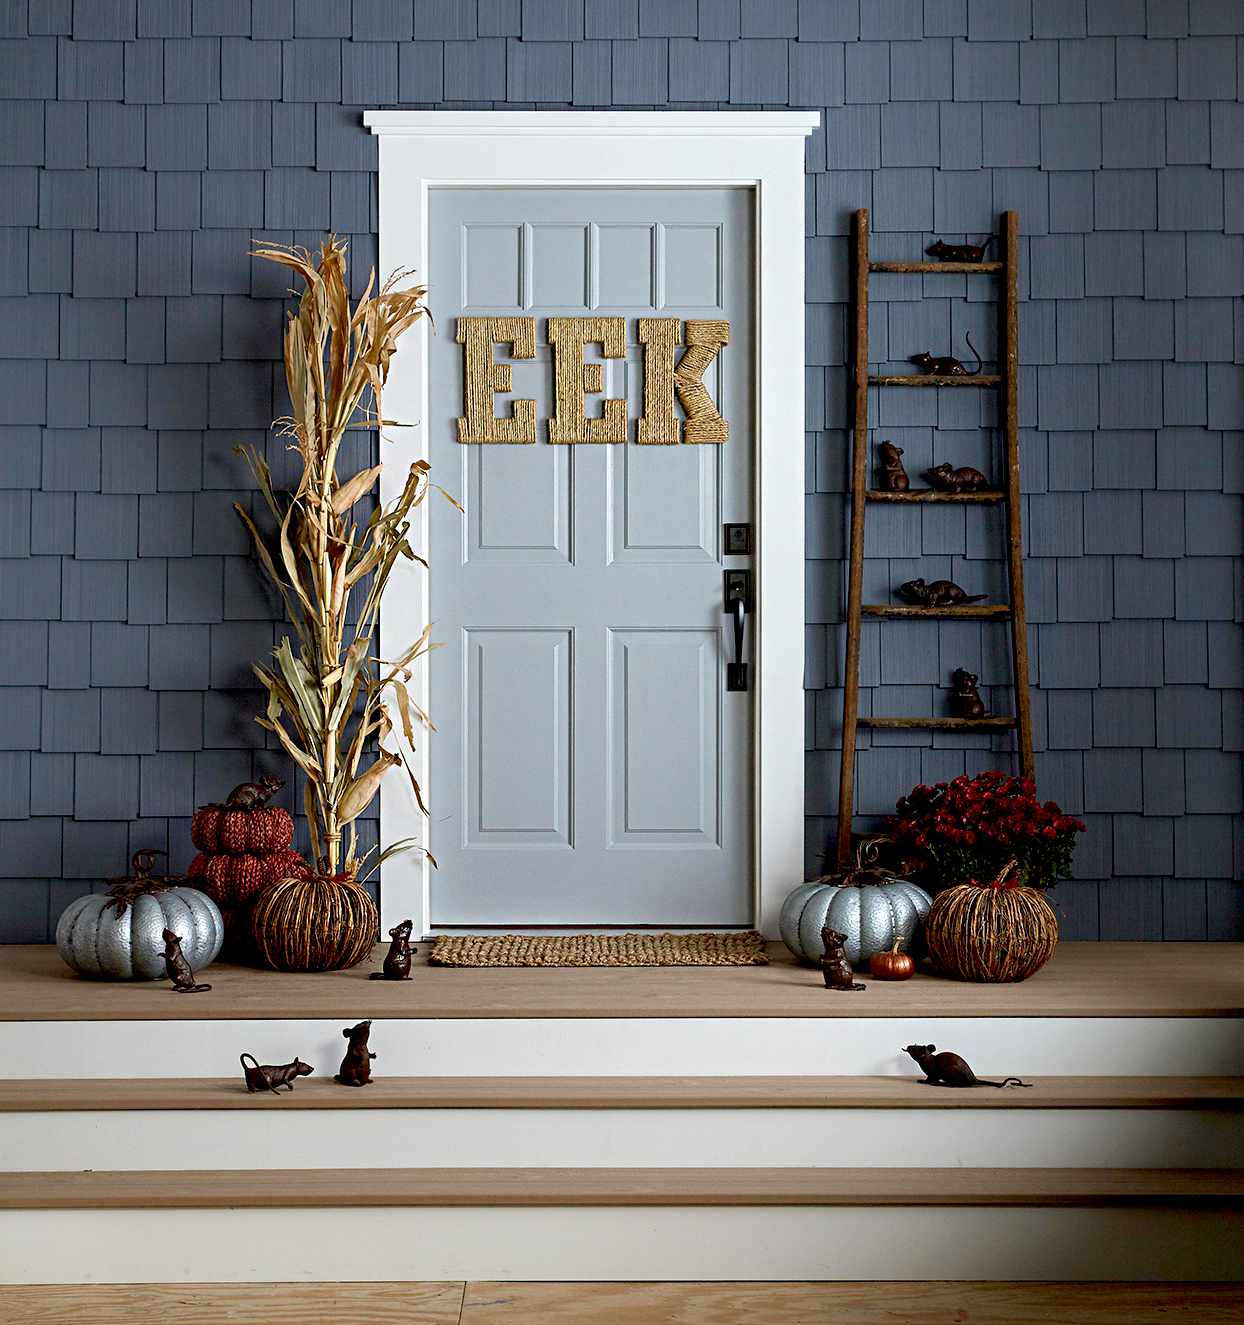 Doorway with Halloween décor, rats, "Eek" wording